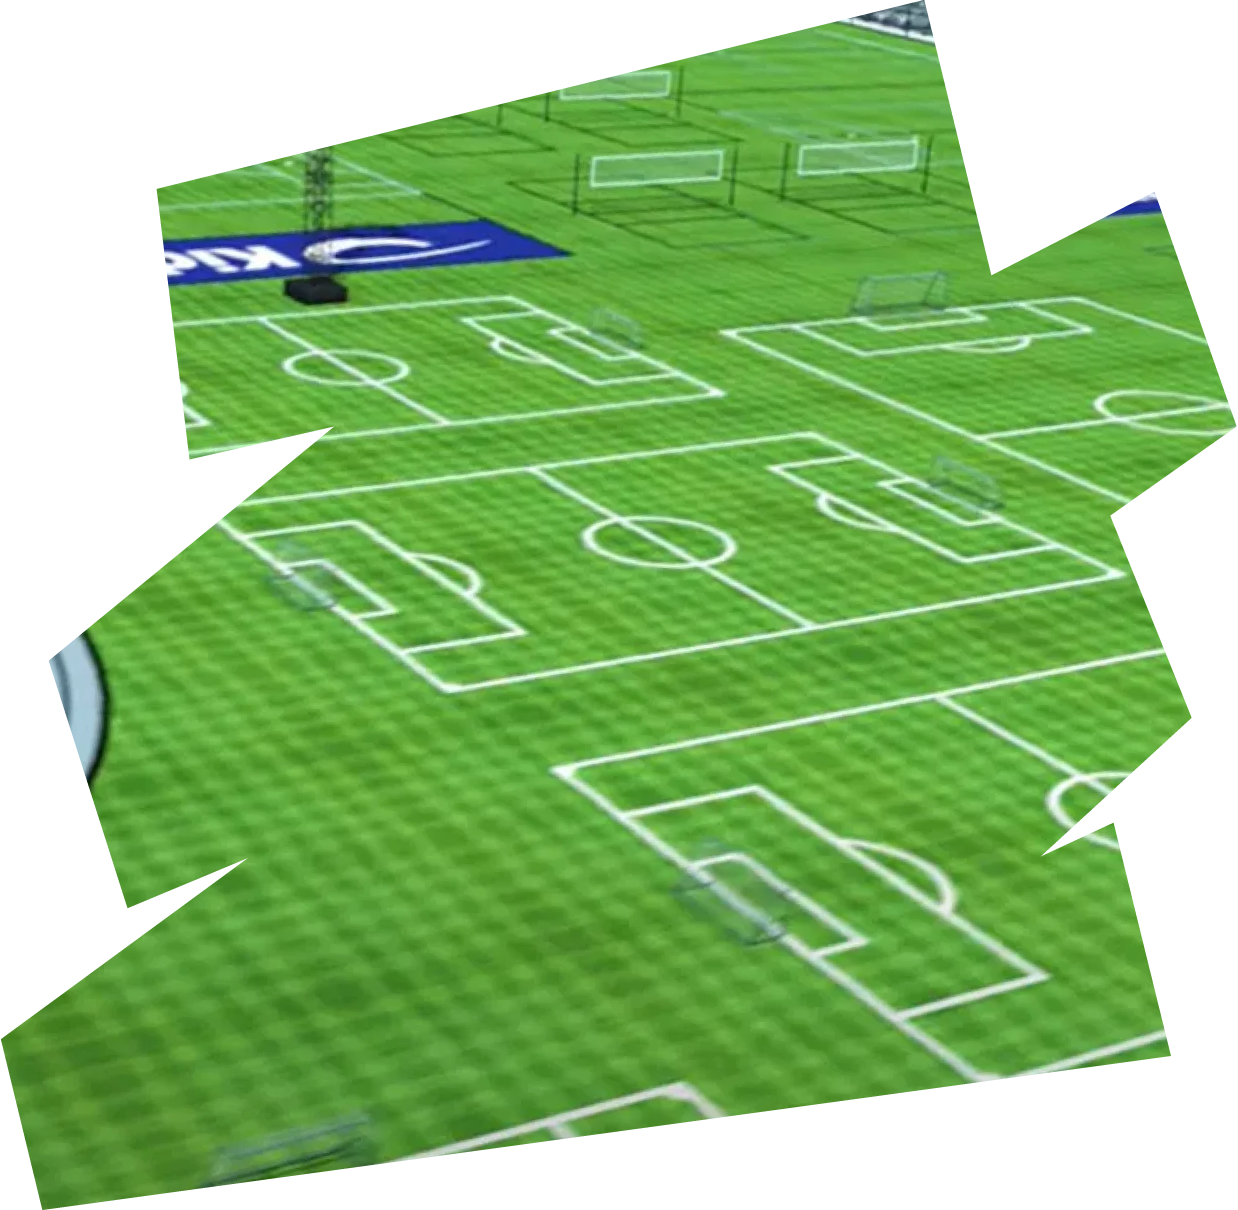 Soccer Fields Rockrose Sports Complex rendering